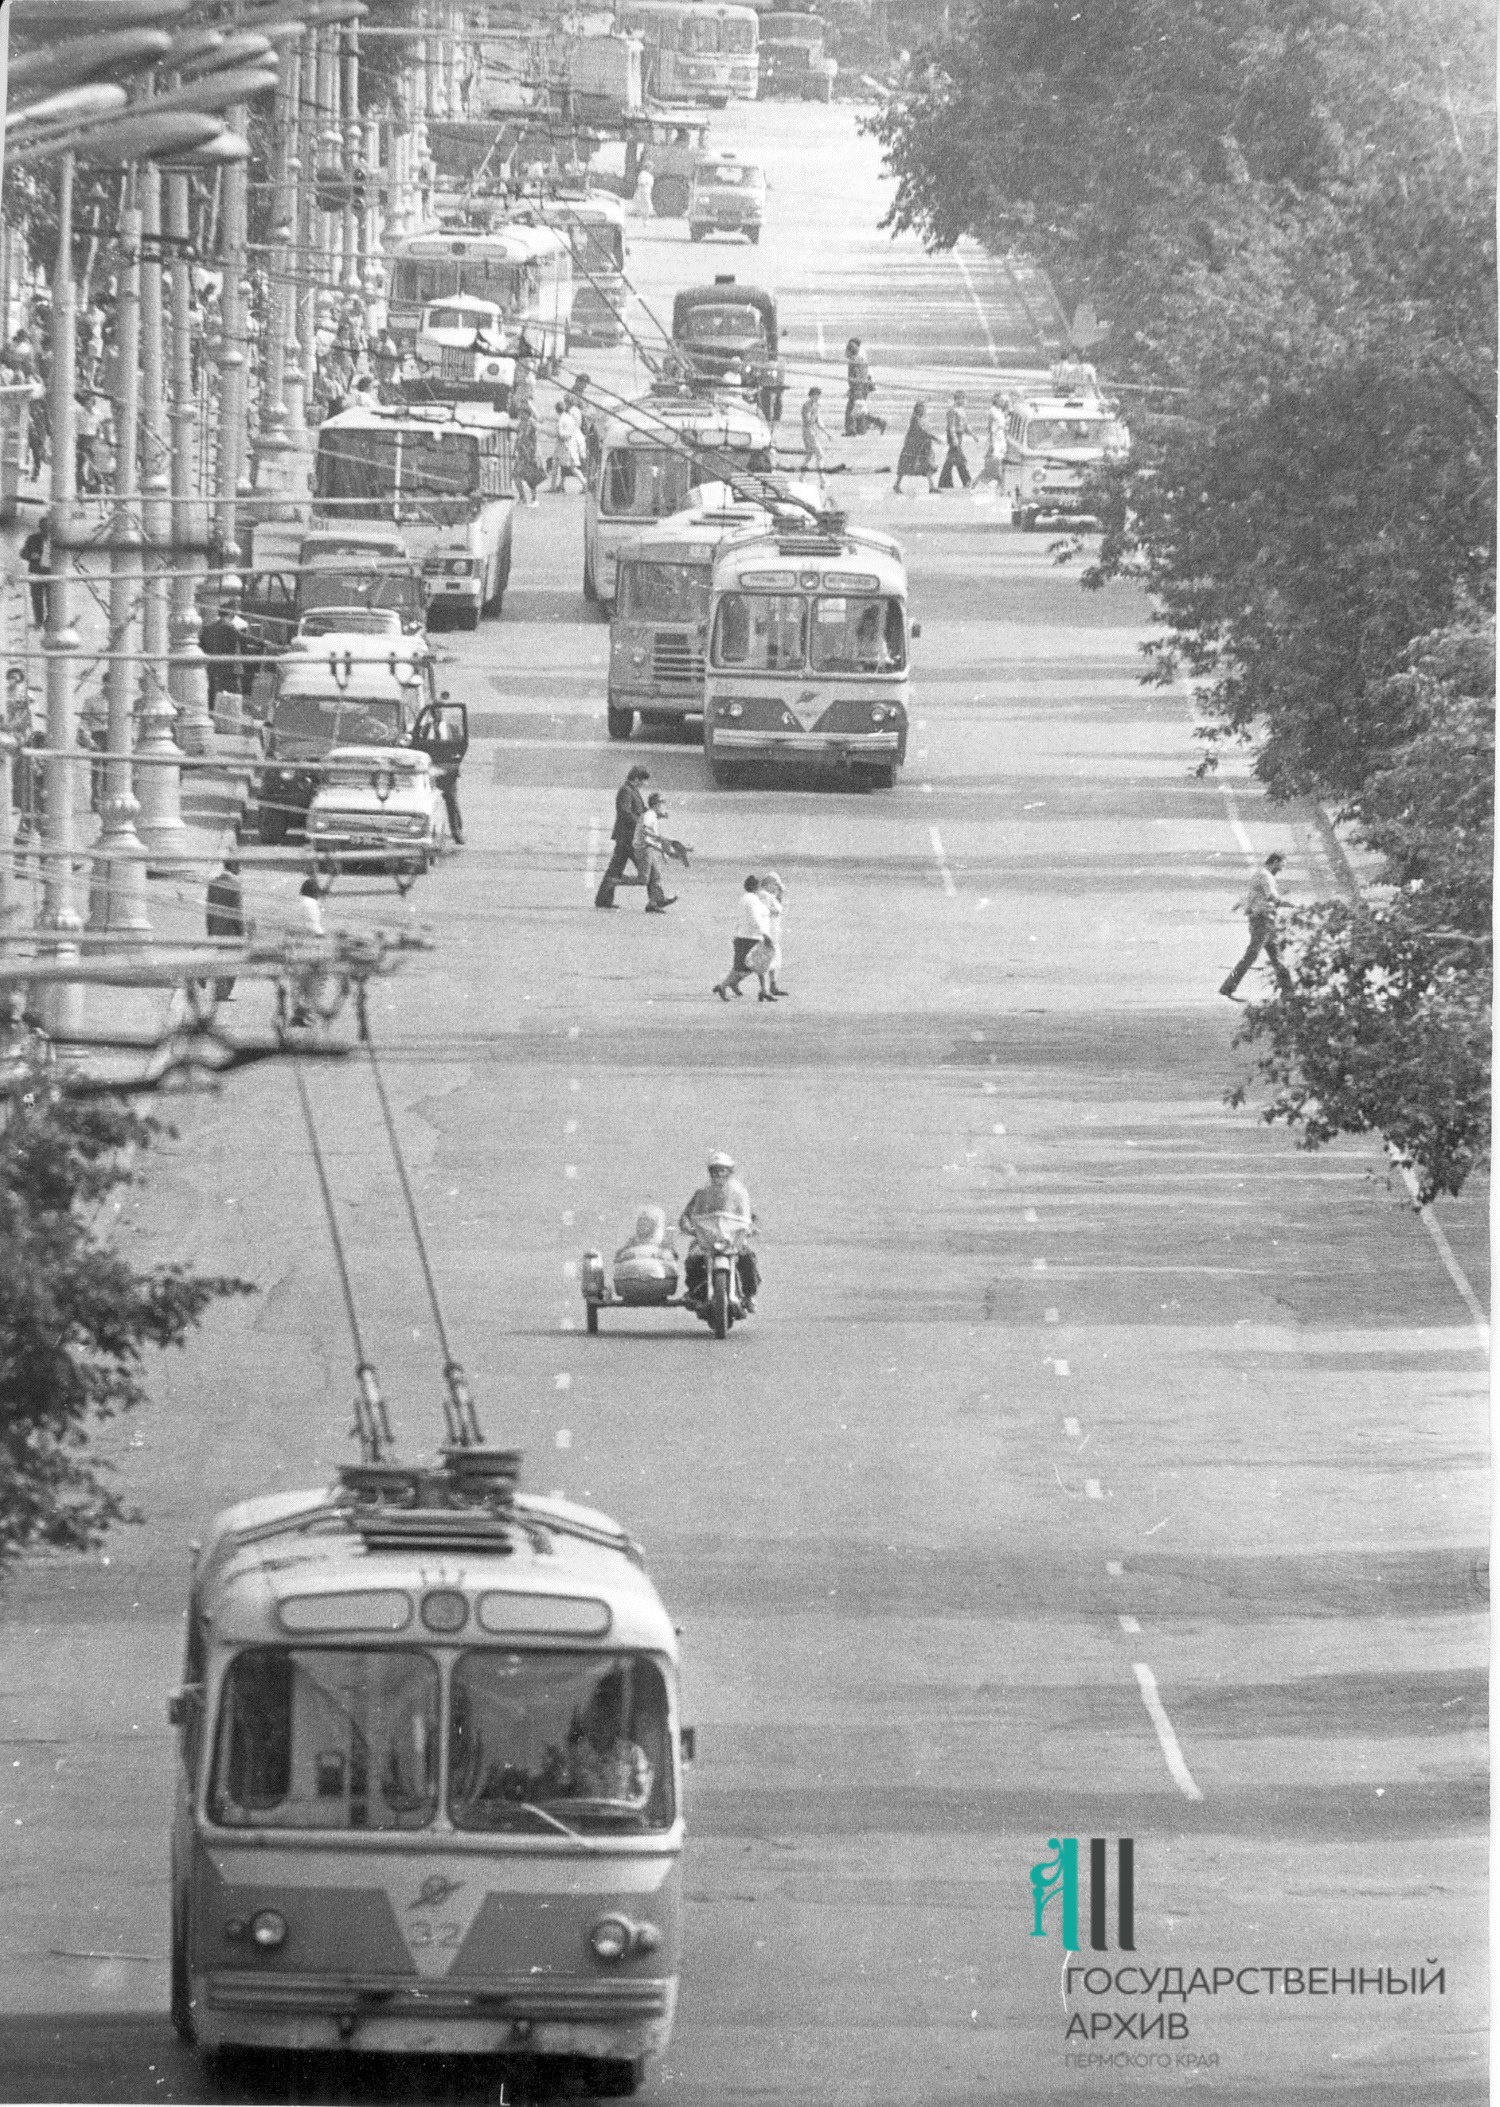 Комсомольский проспект в 1970-е. Обратите внимание, сколько троллейбусов в кадре